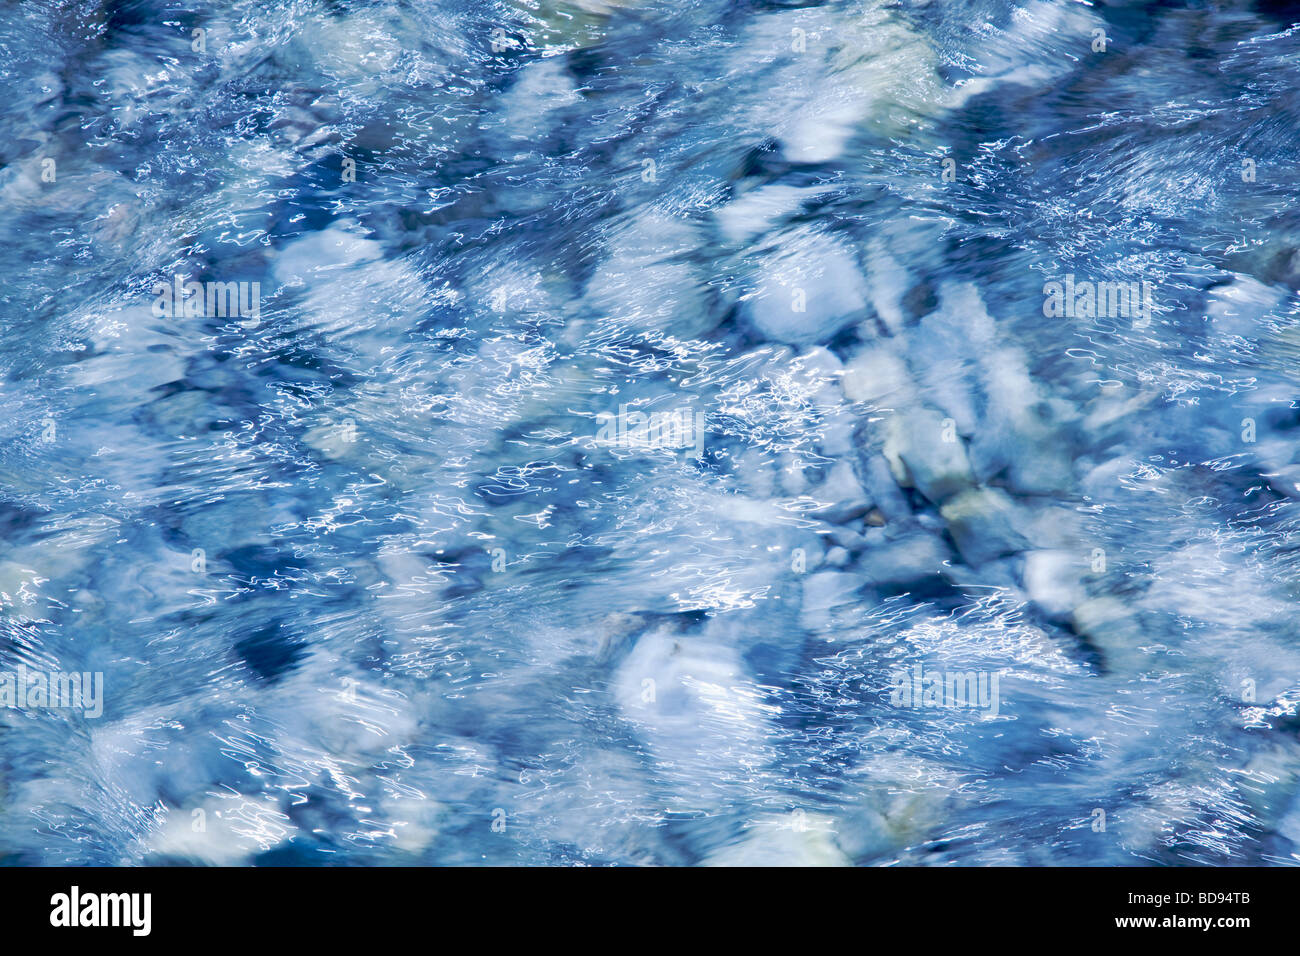 Abstrakt - schnell fließende Wasser über Steinen hautnah Stockfoto